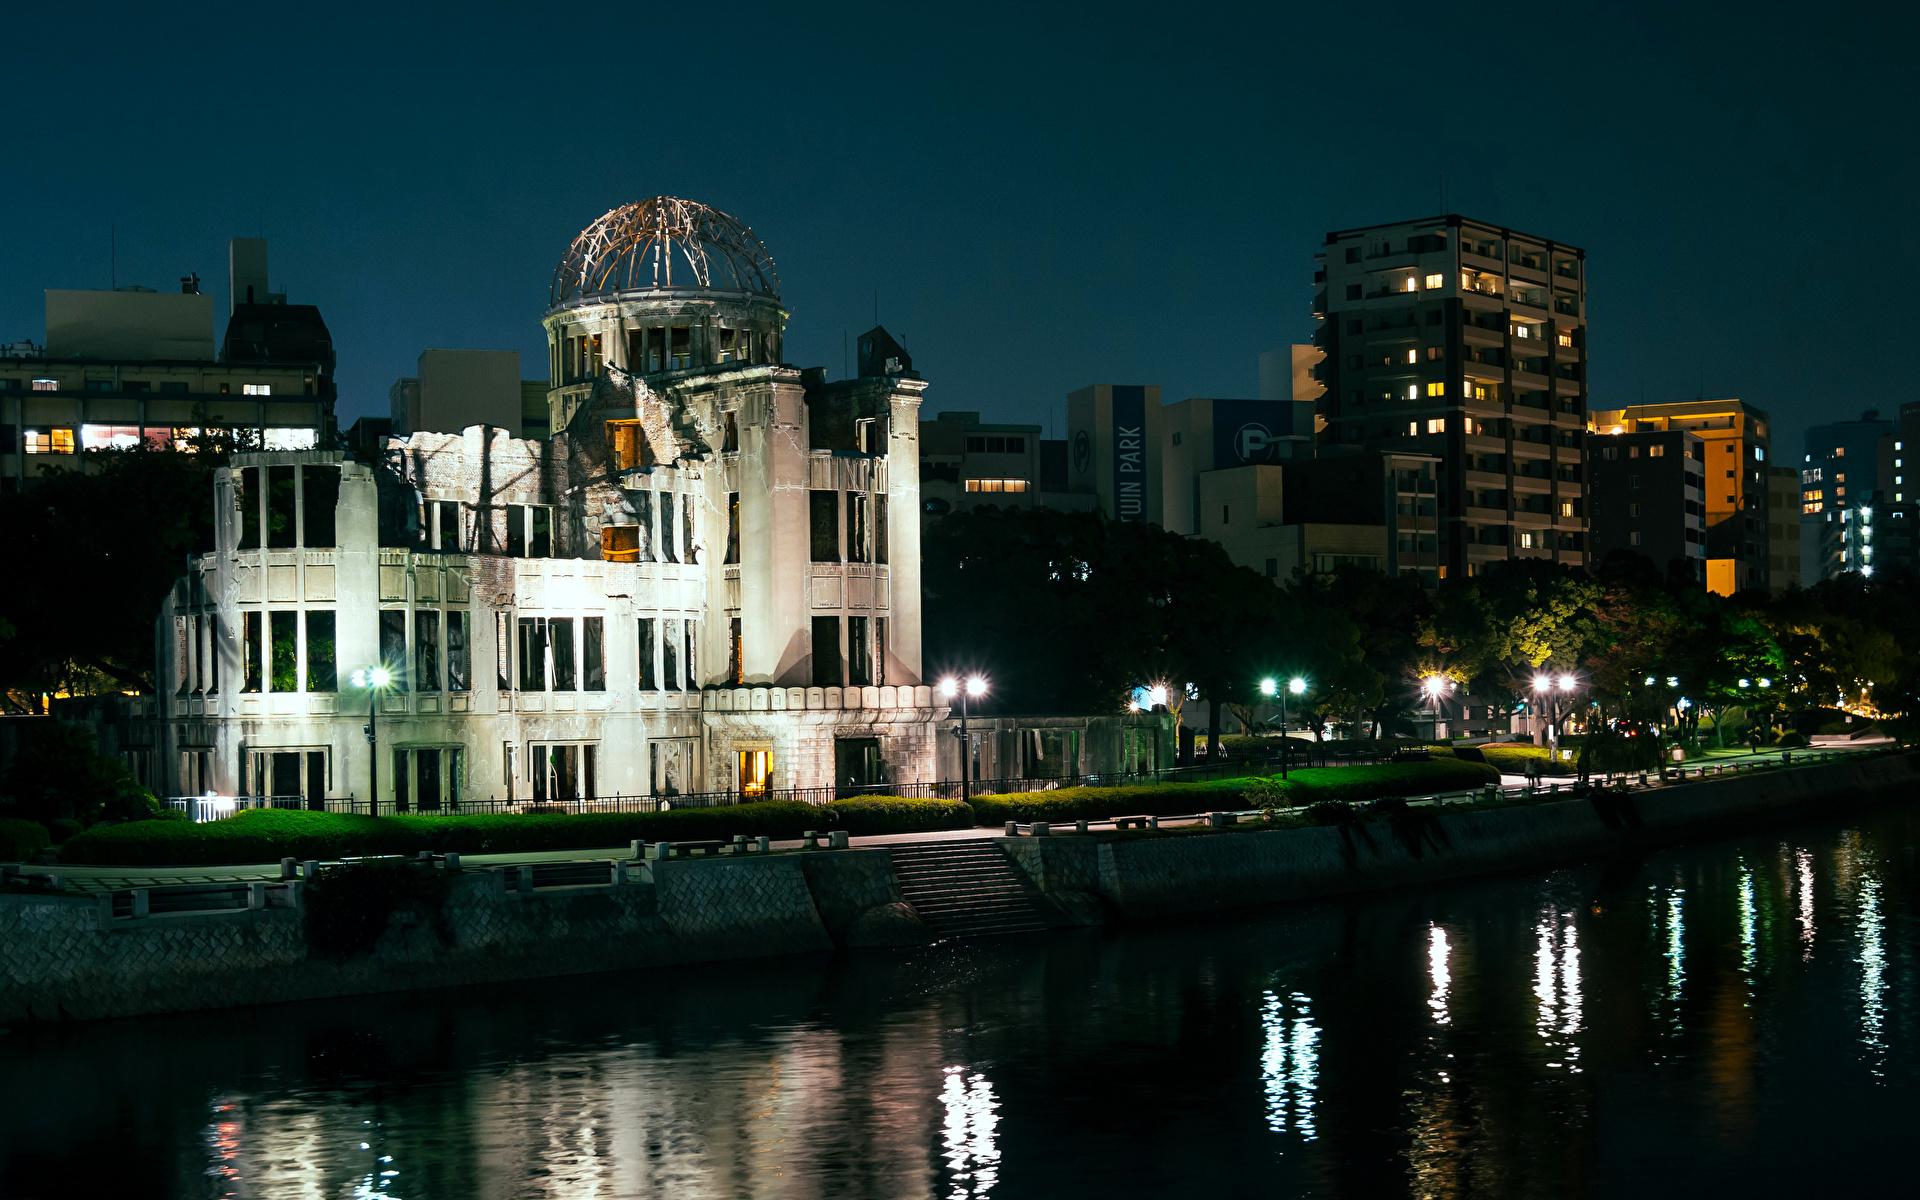 Картинка Япония Hiroshima Peace Memorial (Genbaku Dome) река Ночные Здания Города 1920x1200 Ночь Реки речка ночью в ночи Дома город